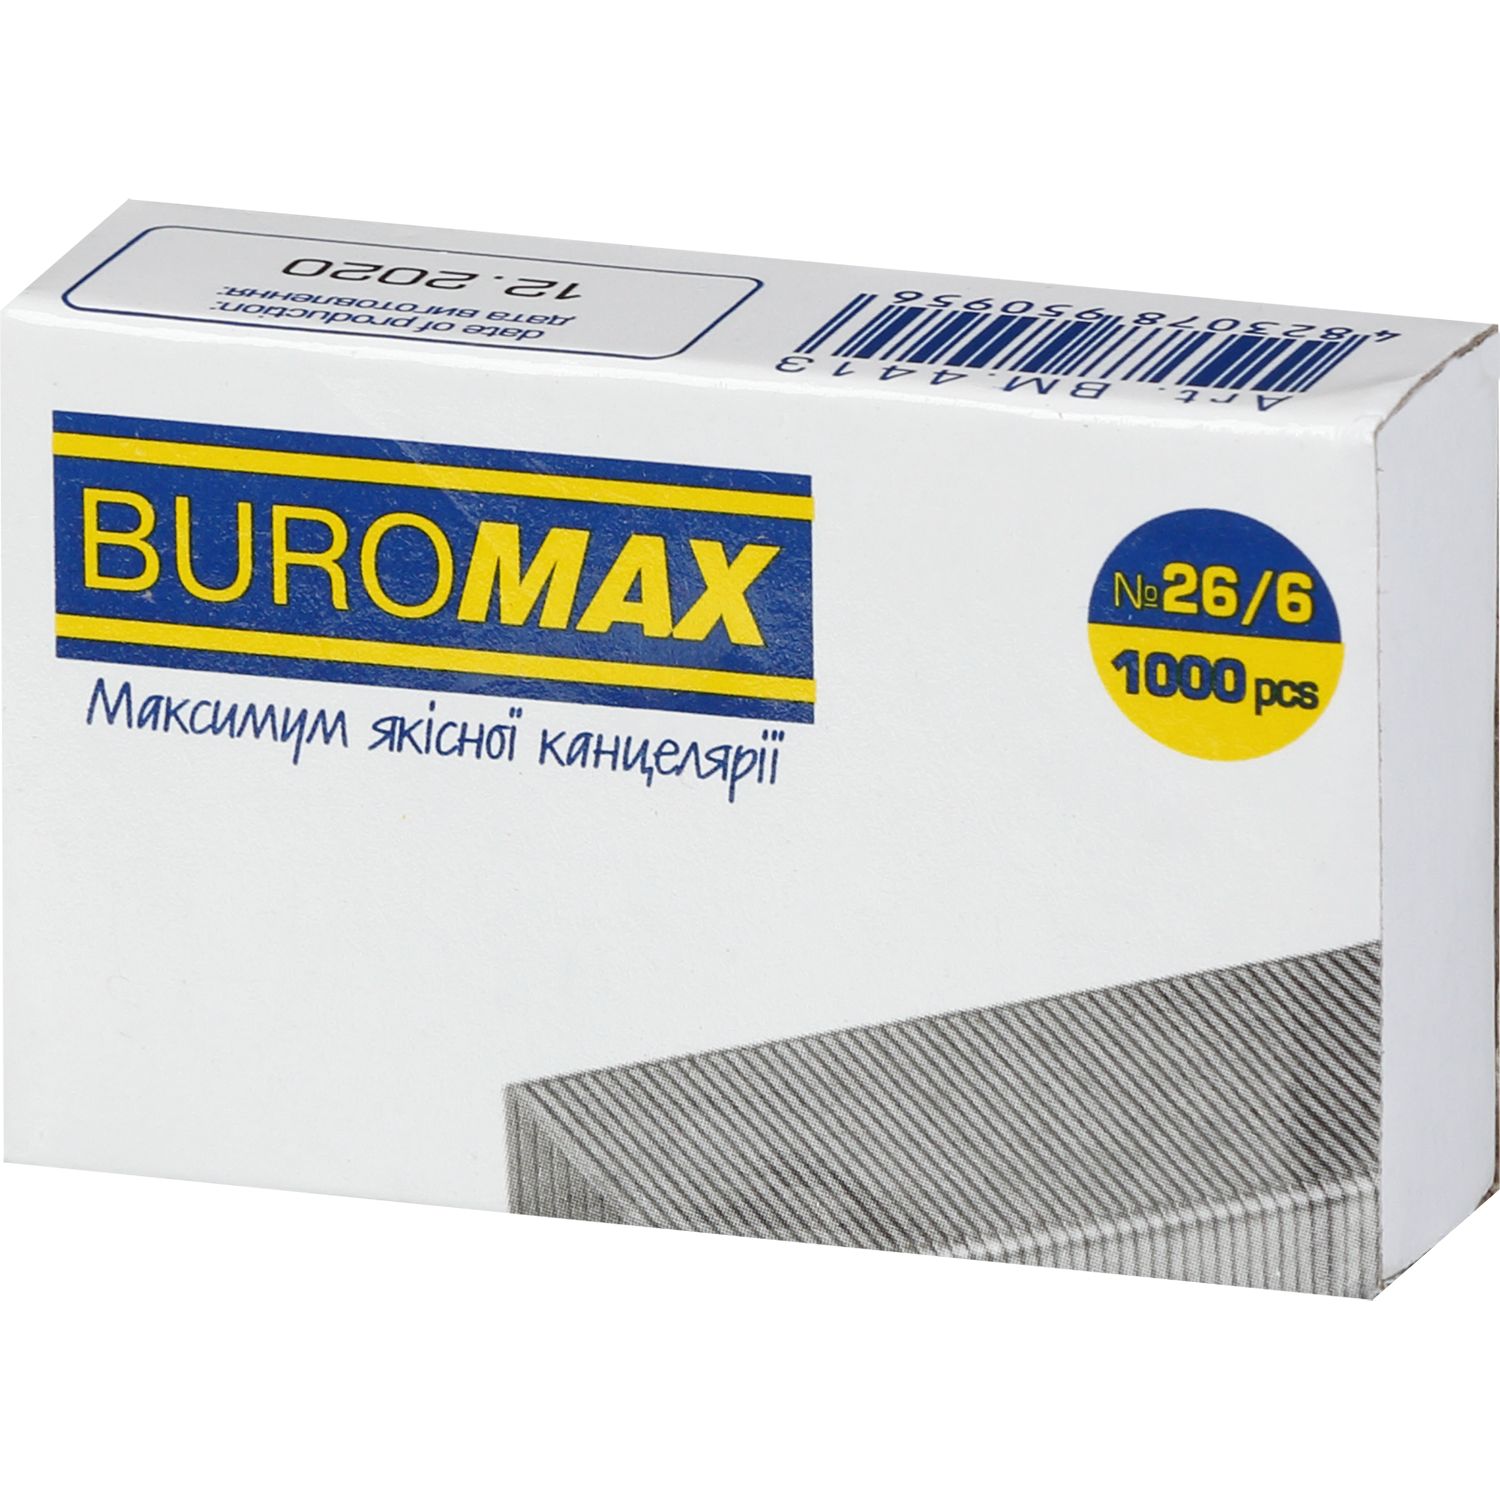 Скобы для степлеров Buromax Люкс №26/6 1000 шт. (BM.4413) - фото 1